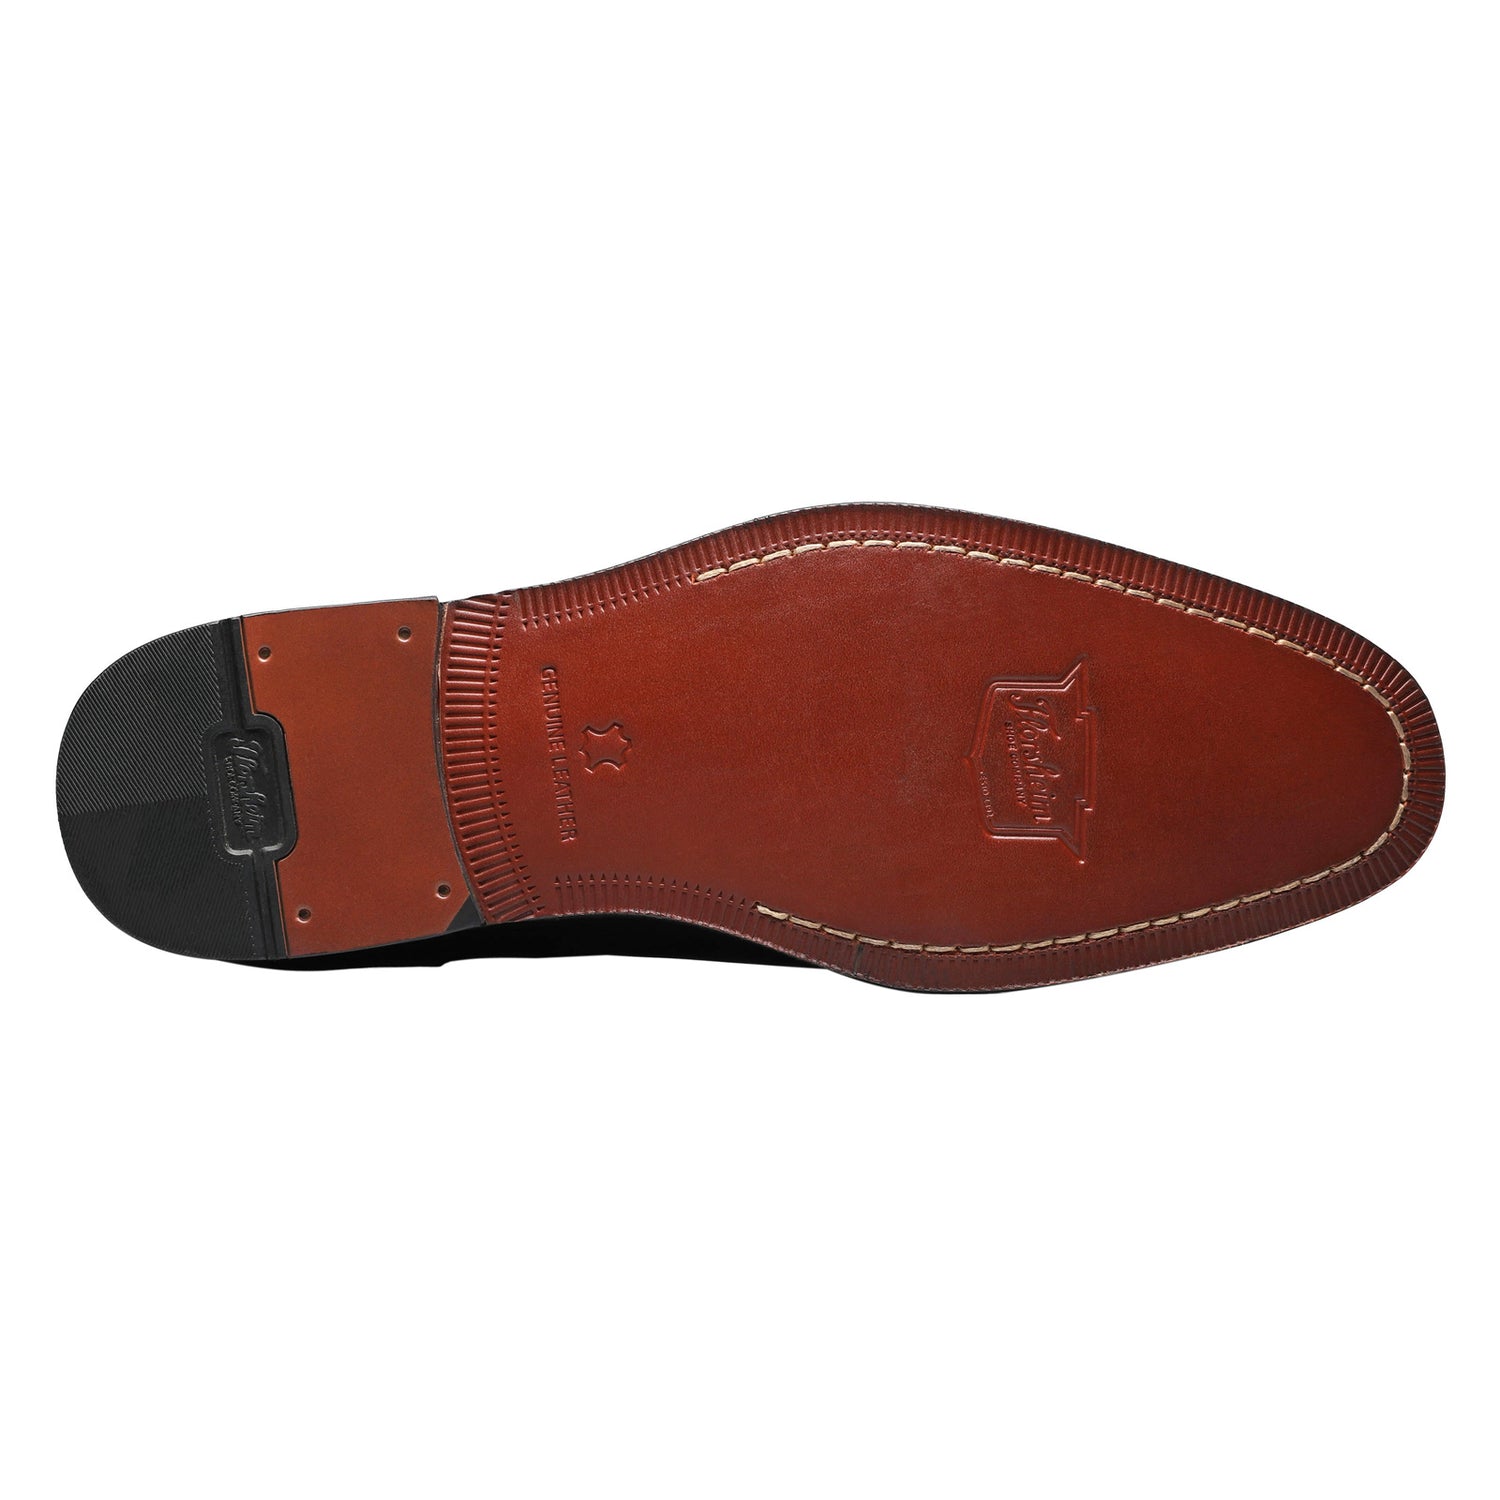 Peltz Shoes  Men's Florsheim Jetson Cap Toe Oxford BLACK 14250-001